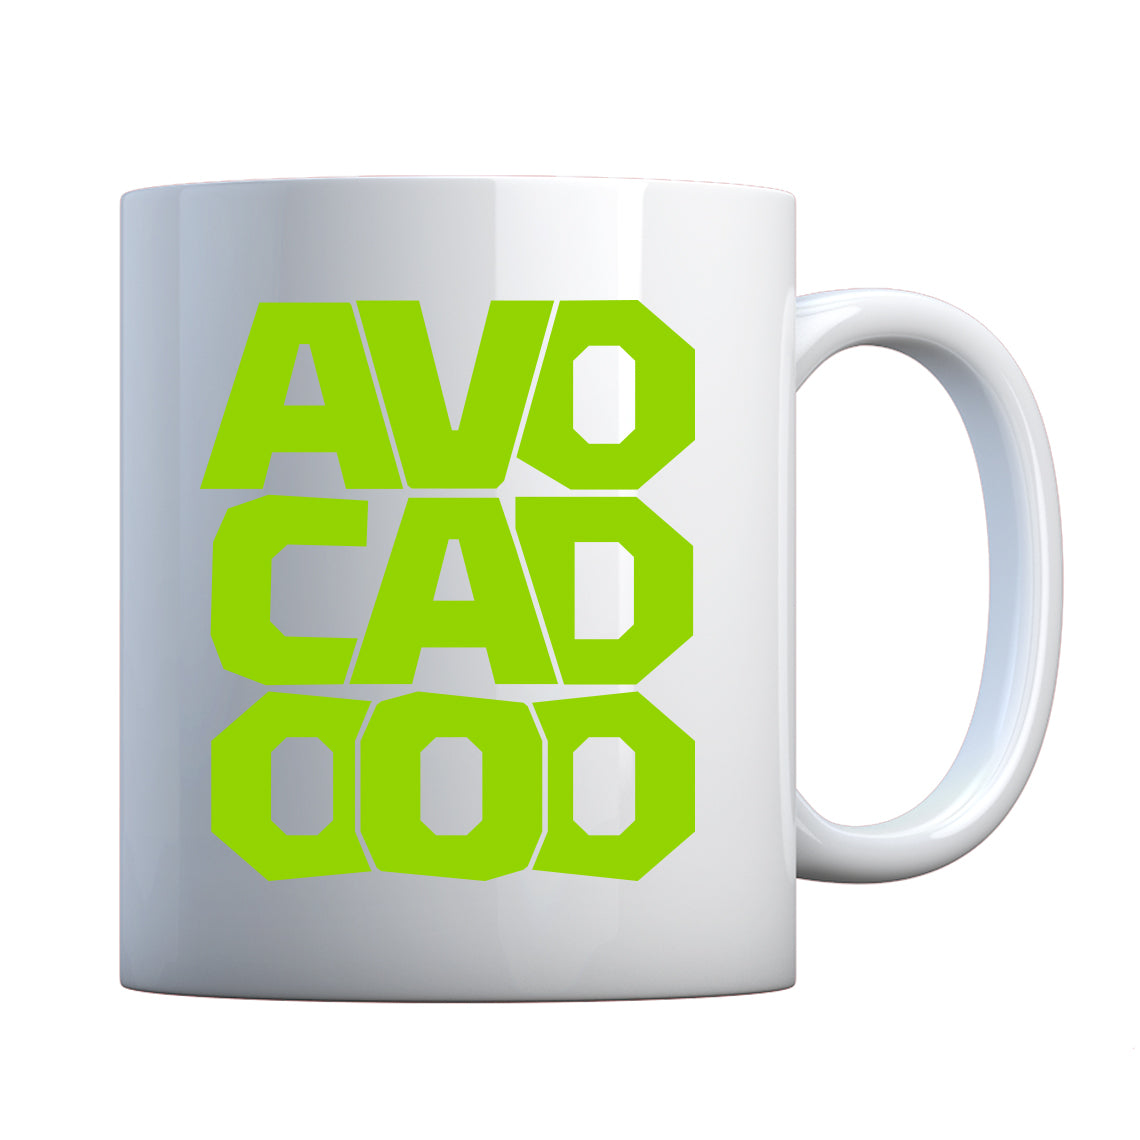 Mug Avocado Ceramic Gift Mug